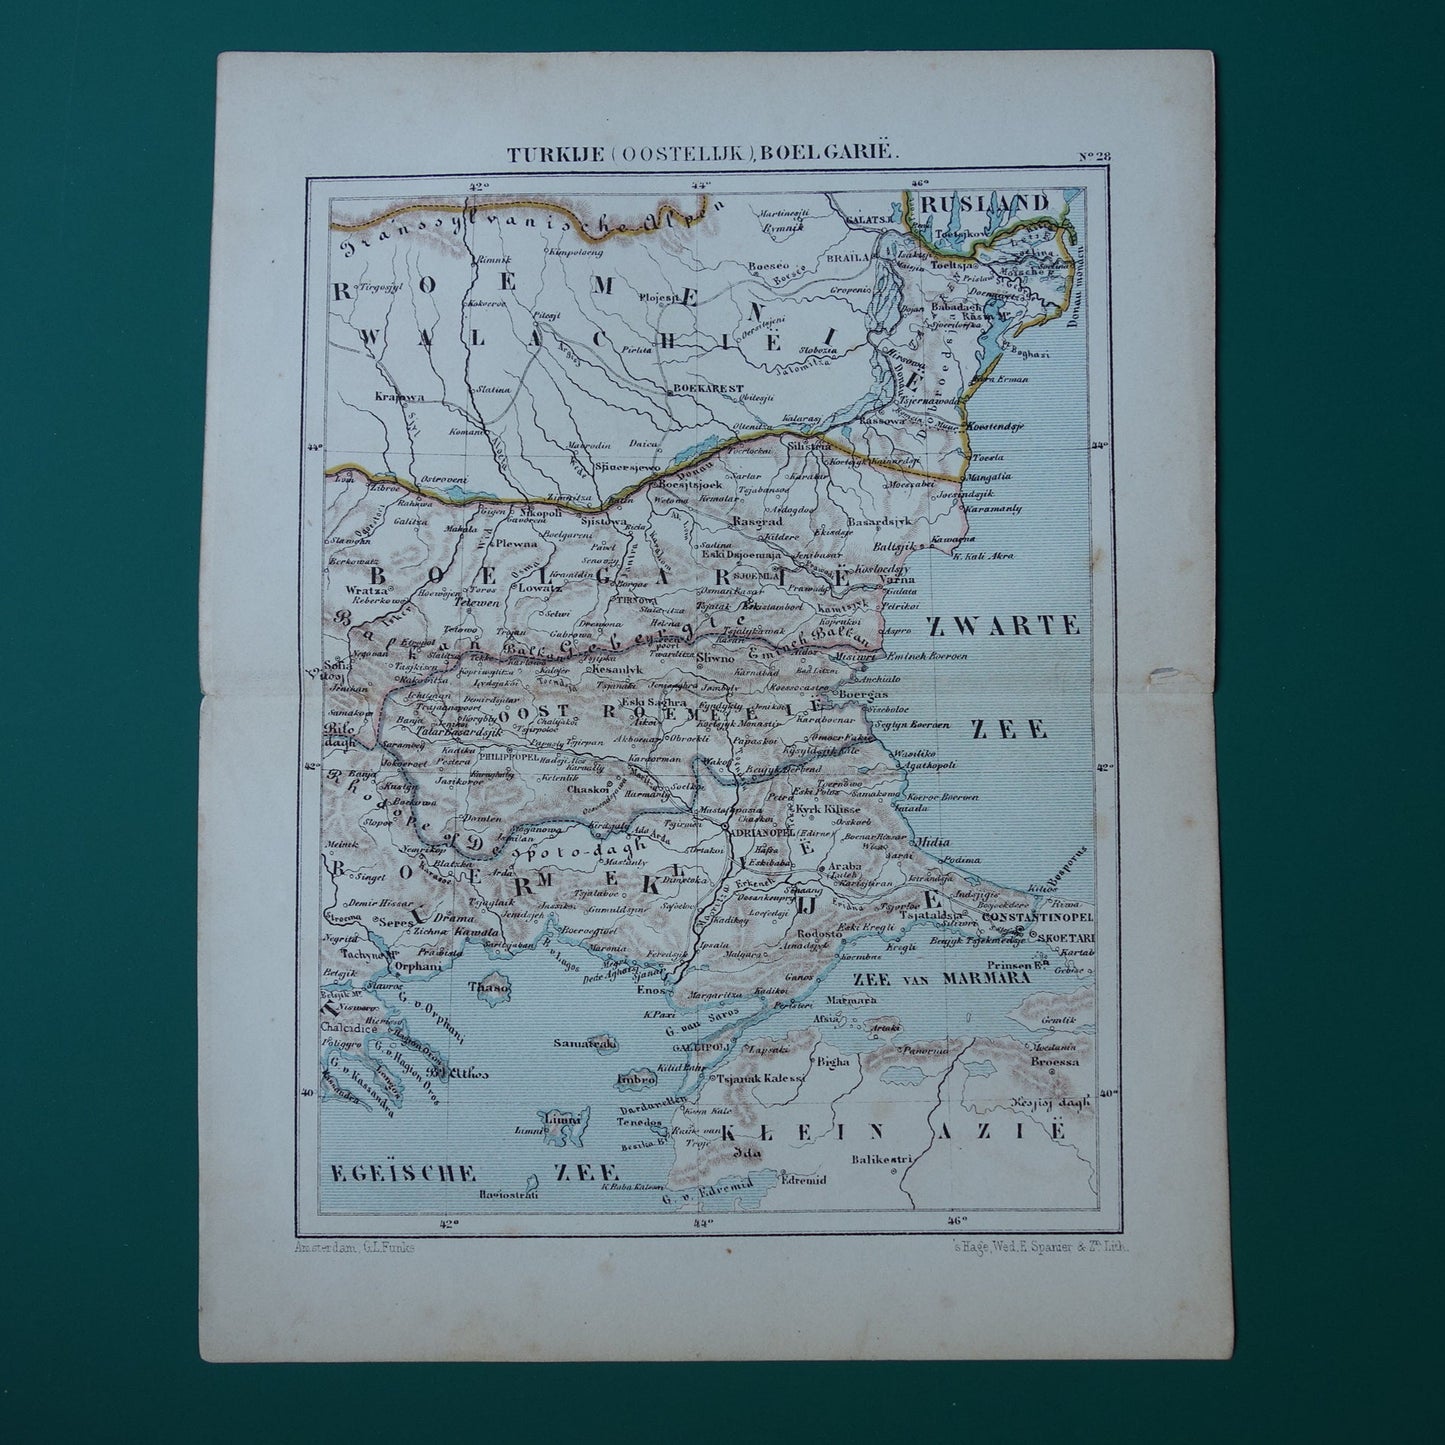 BULGARIJE oude landkaart originele antieke Kuyper kaart uit 1882 vintage kaarten Boelgarië Oost-Roemelië